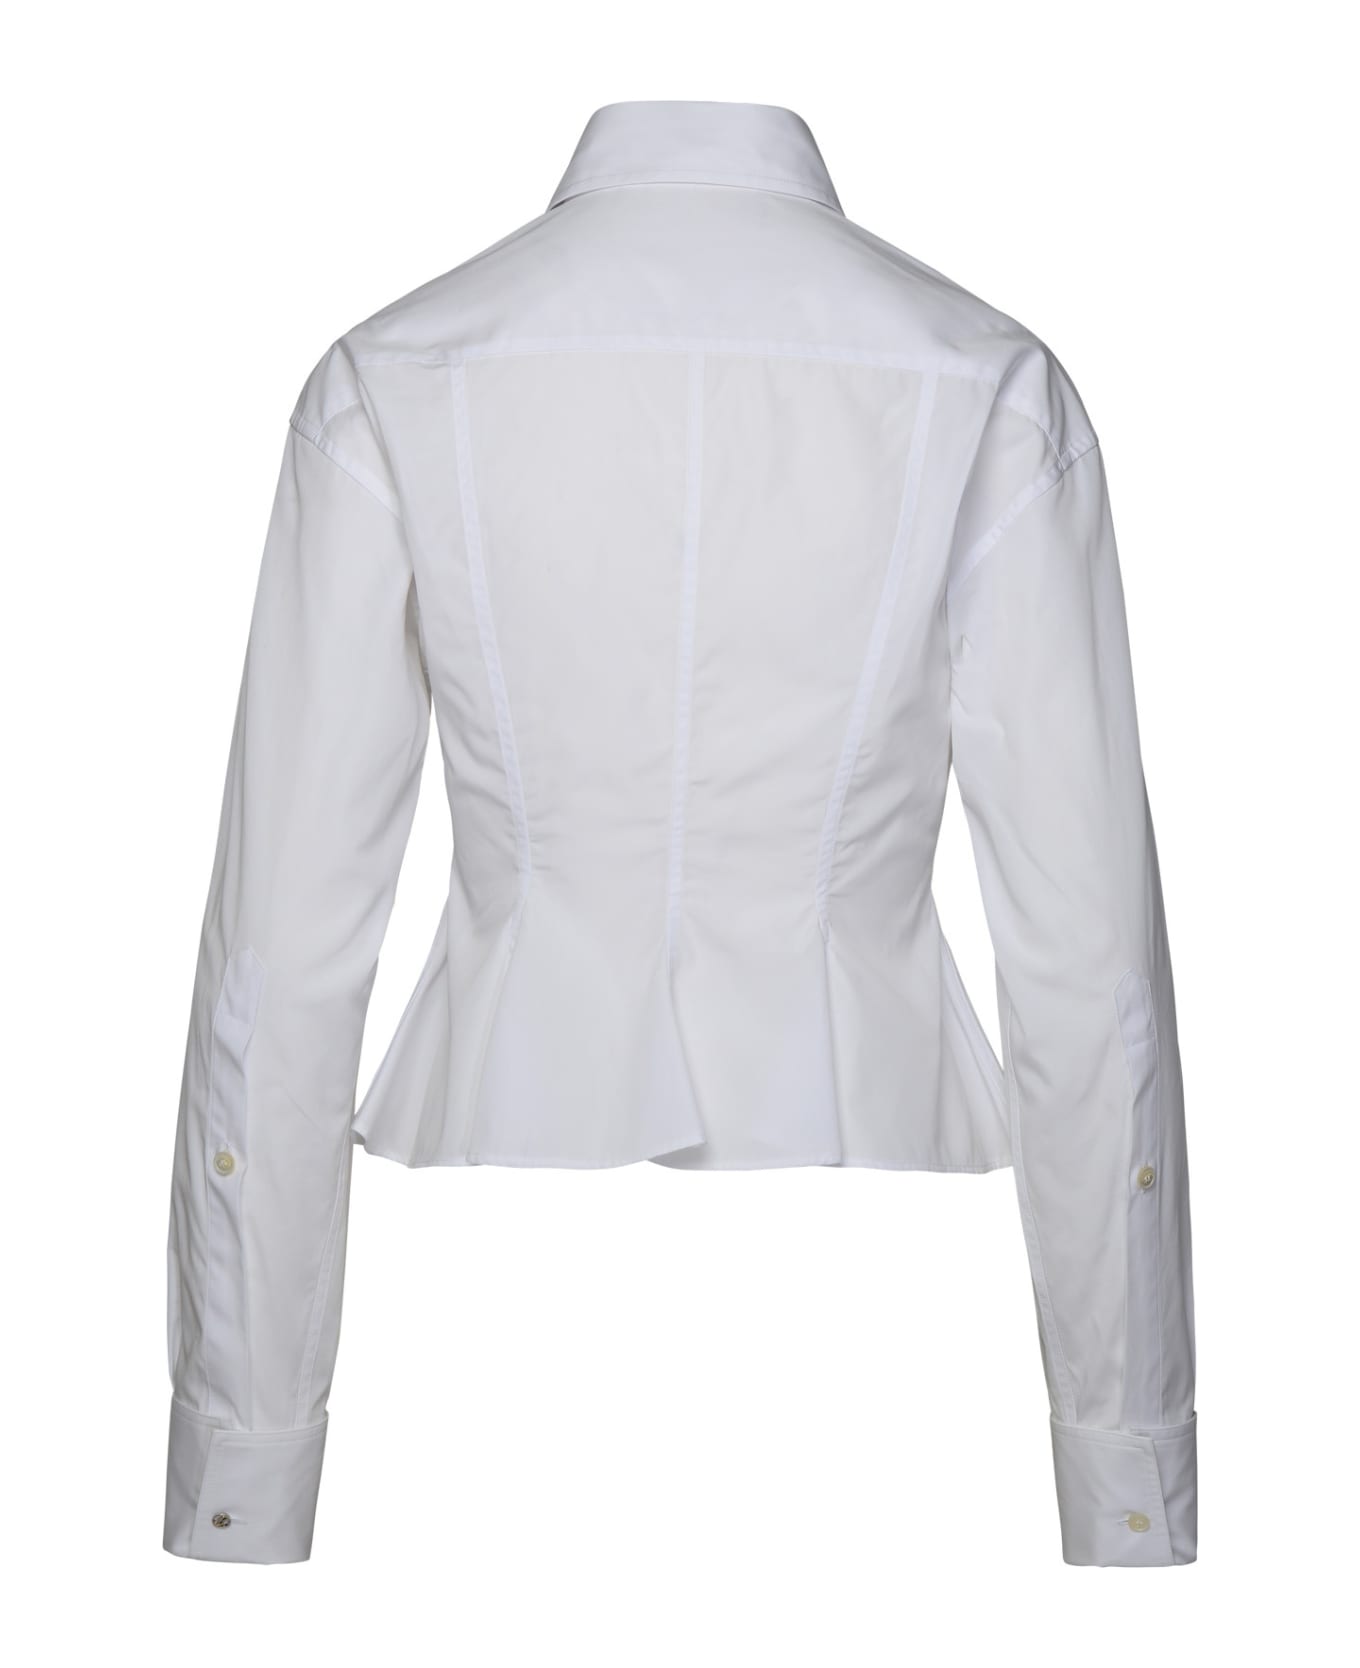 Stella McCartney Peplum Shirt - Pure White